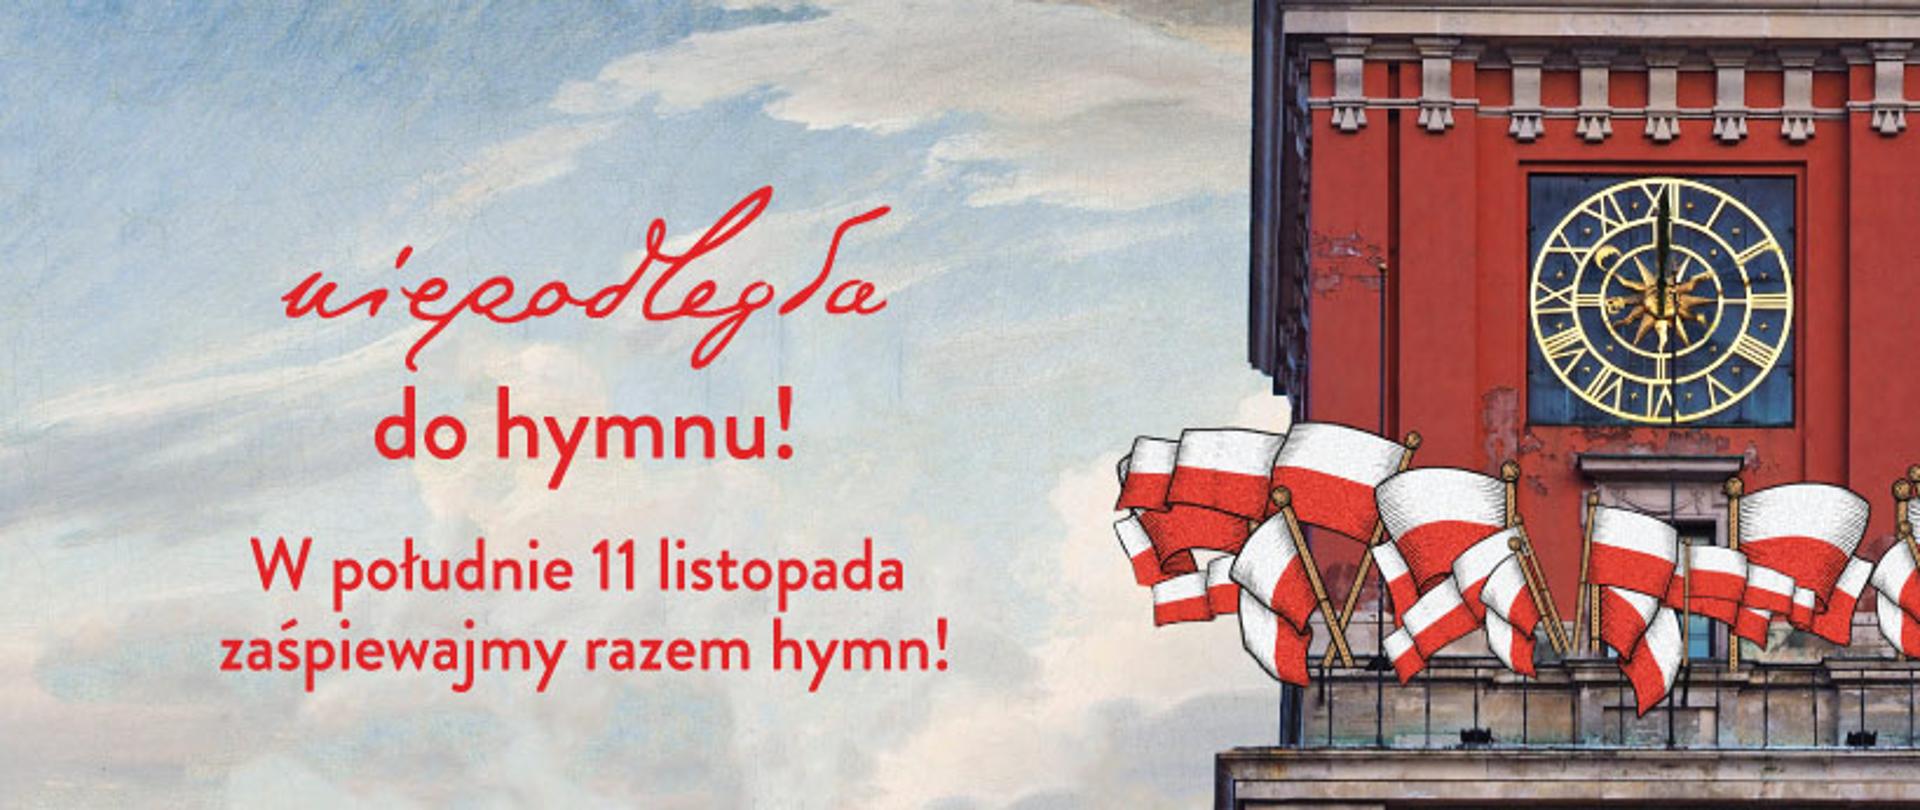 Grafika przedstawia fragment wieży z zegarem wybijającym 12.00 w południe. Na wieży rozwieszone są biało-czerwone flagi. Obok na tle nieba widnieje czerwony napis: "Niepodległa do hymnu! W południe 11 listopada zaśpiewajmy razem hymn!"